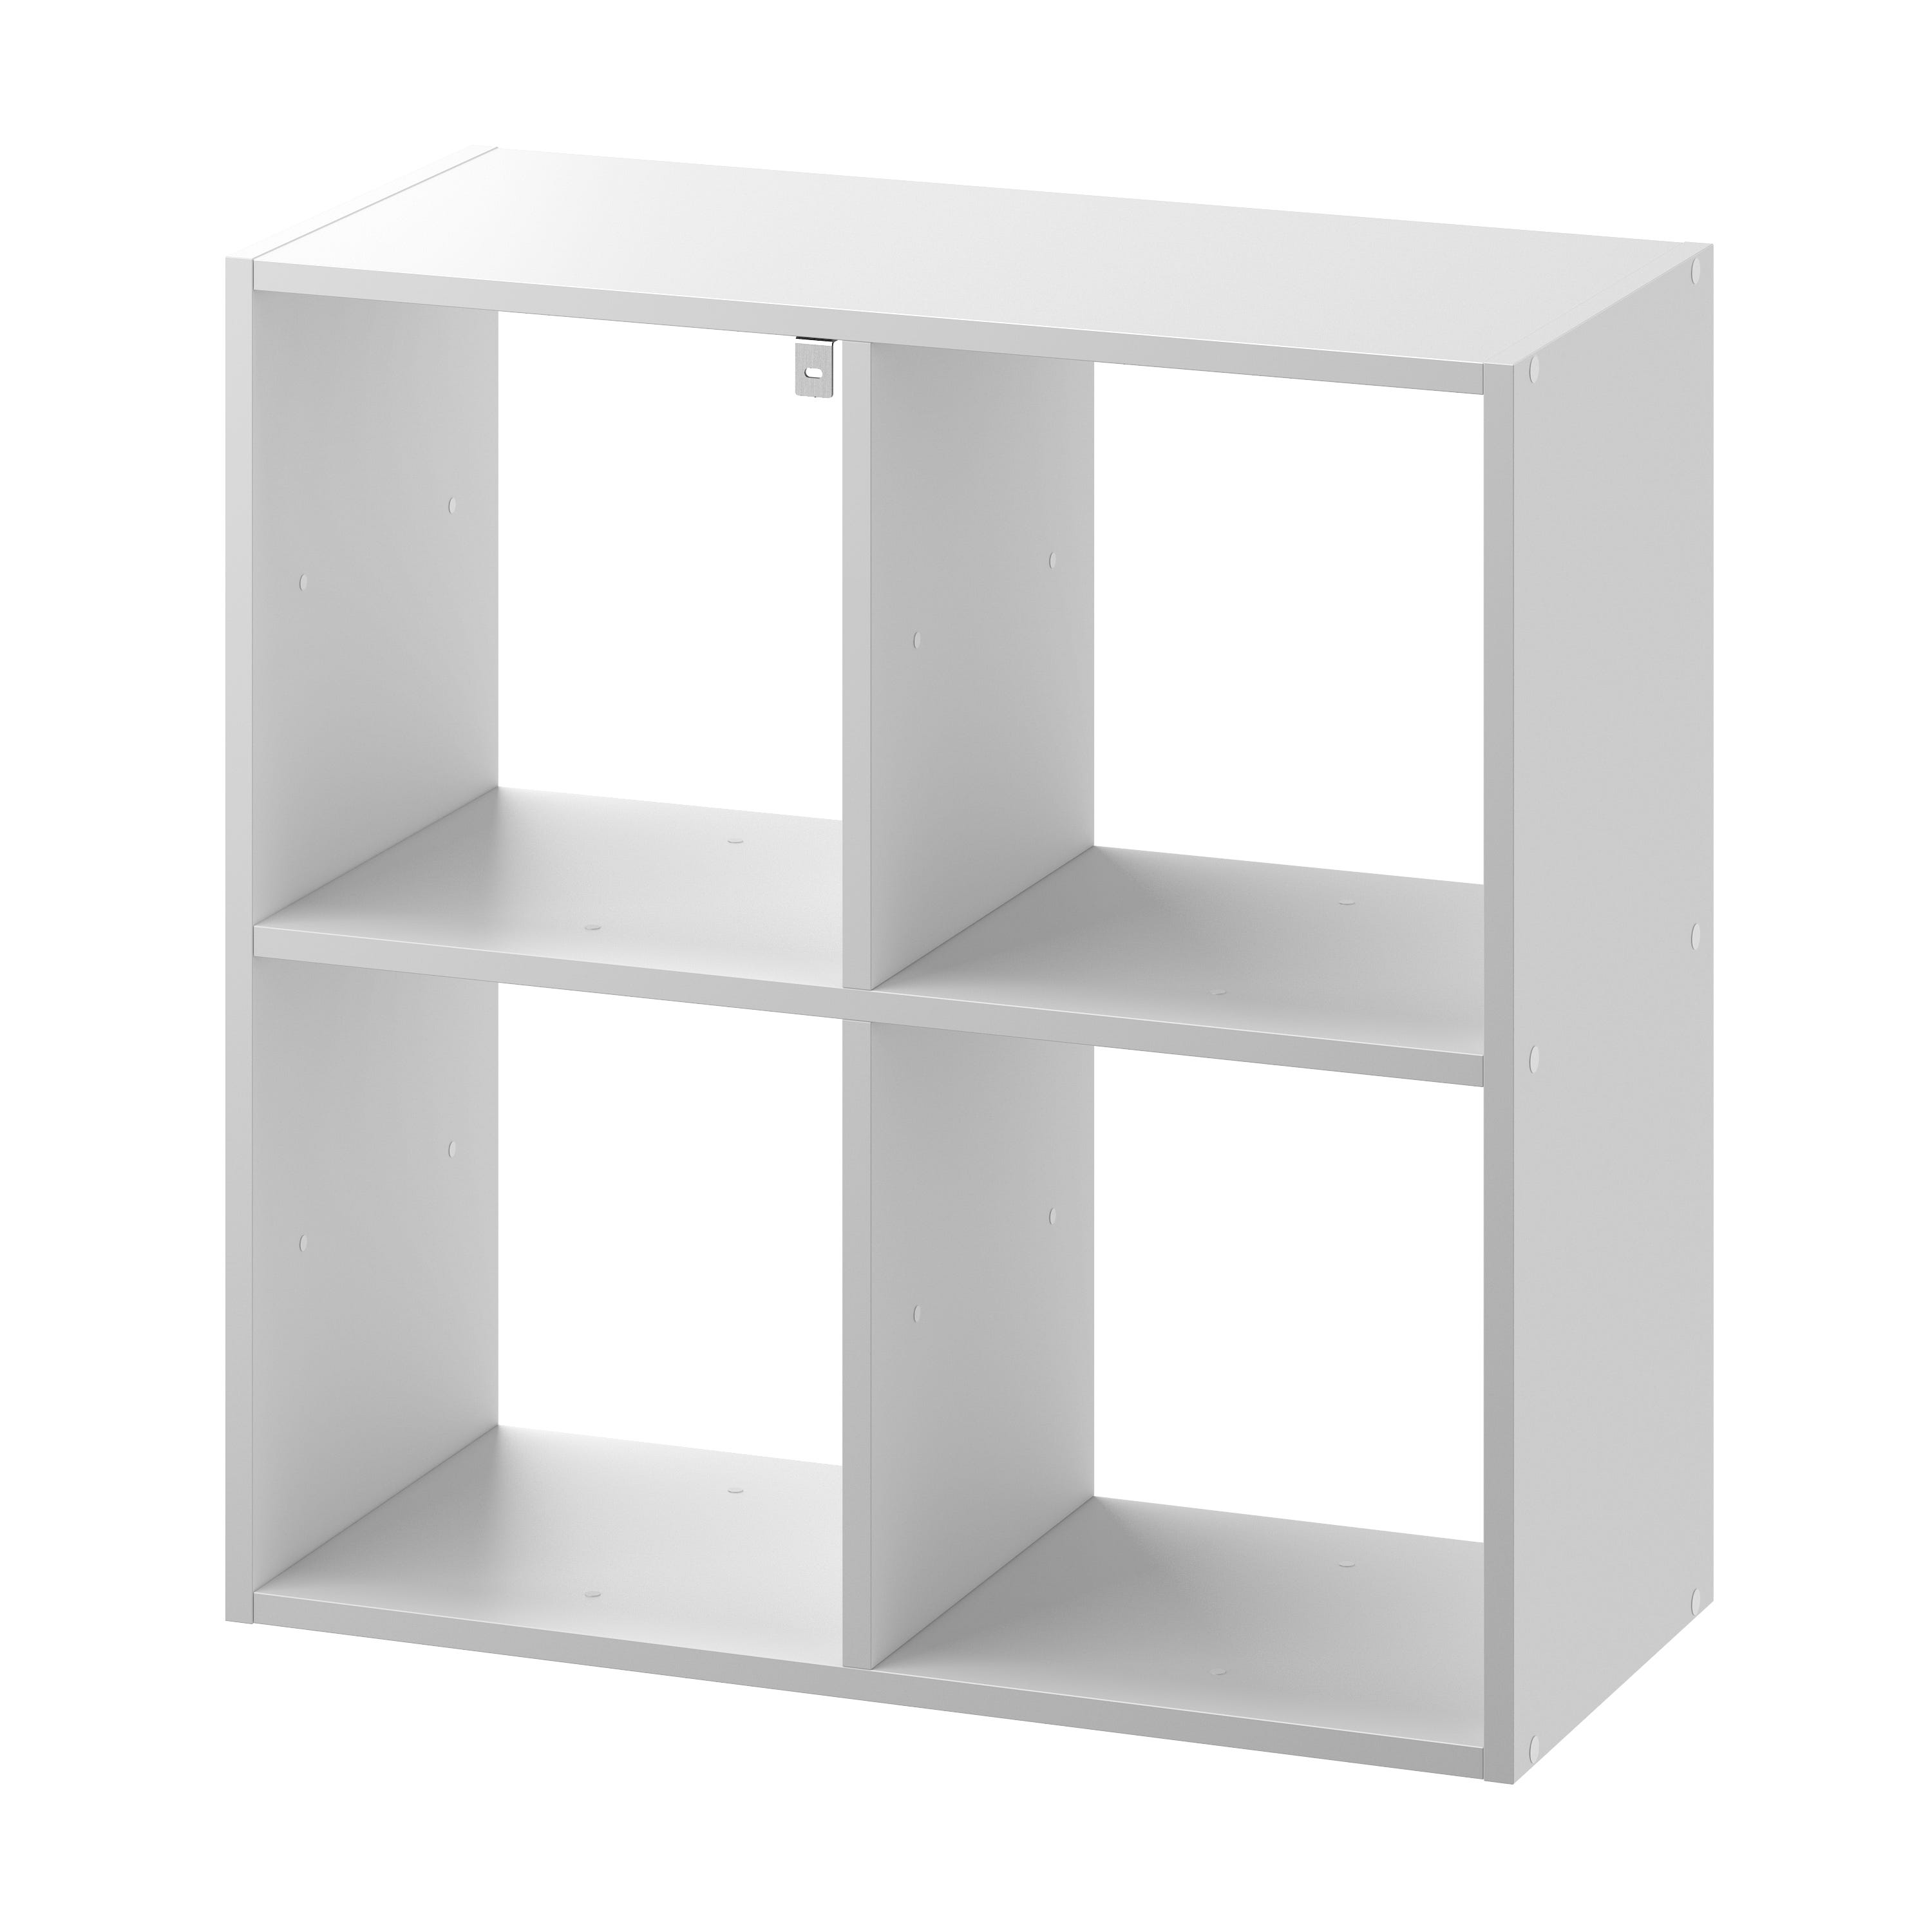 Estantería tipo cubo, estante blanco para libros con 4 cubos, estante  pequeño de 2 niveles, estantería baja debajo de la ventana, estantes de